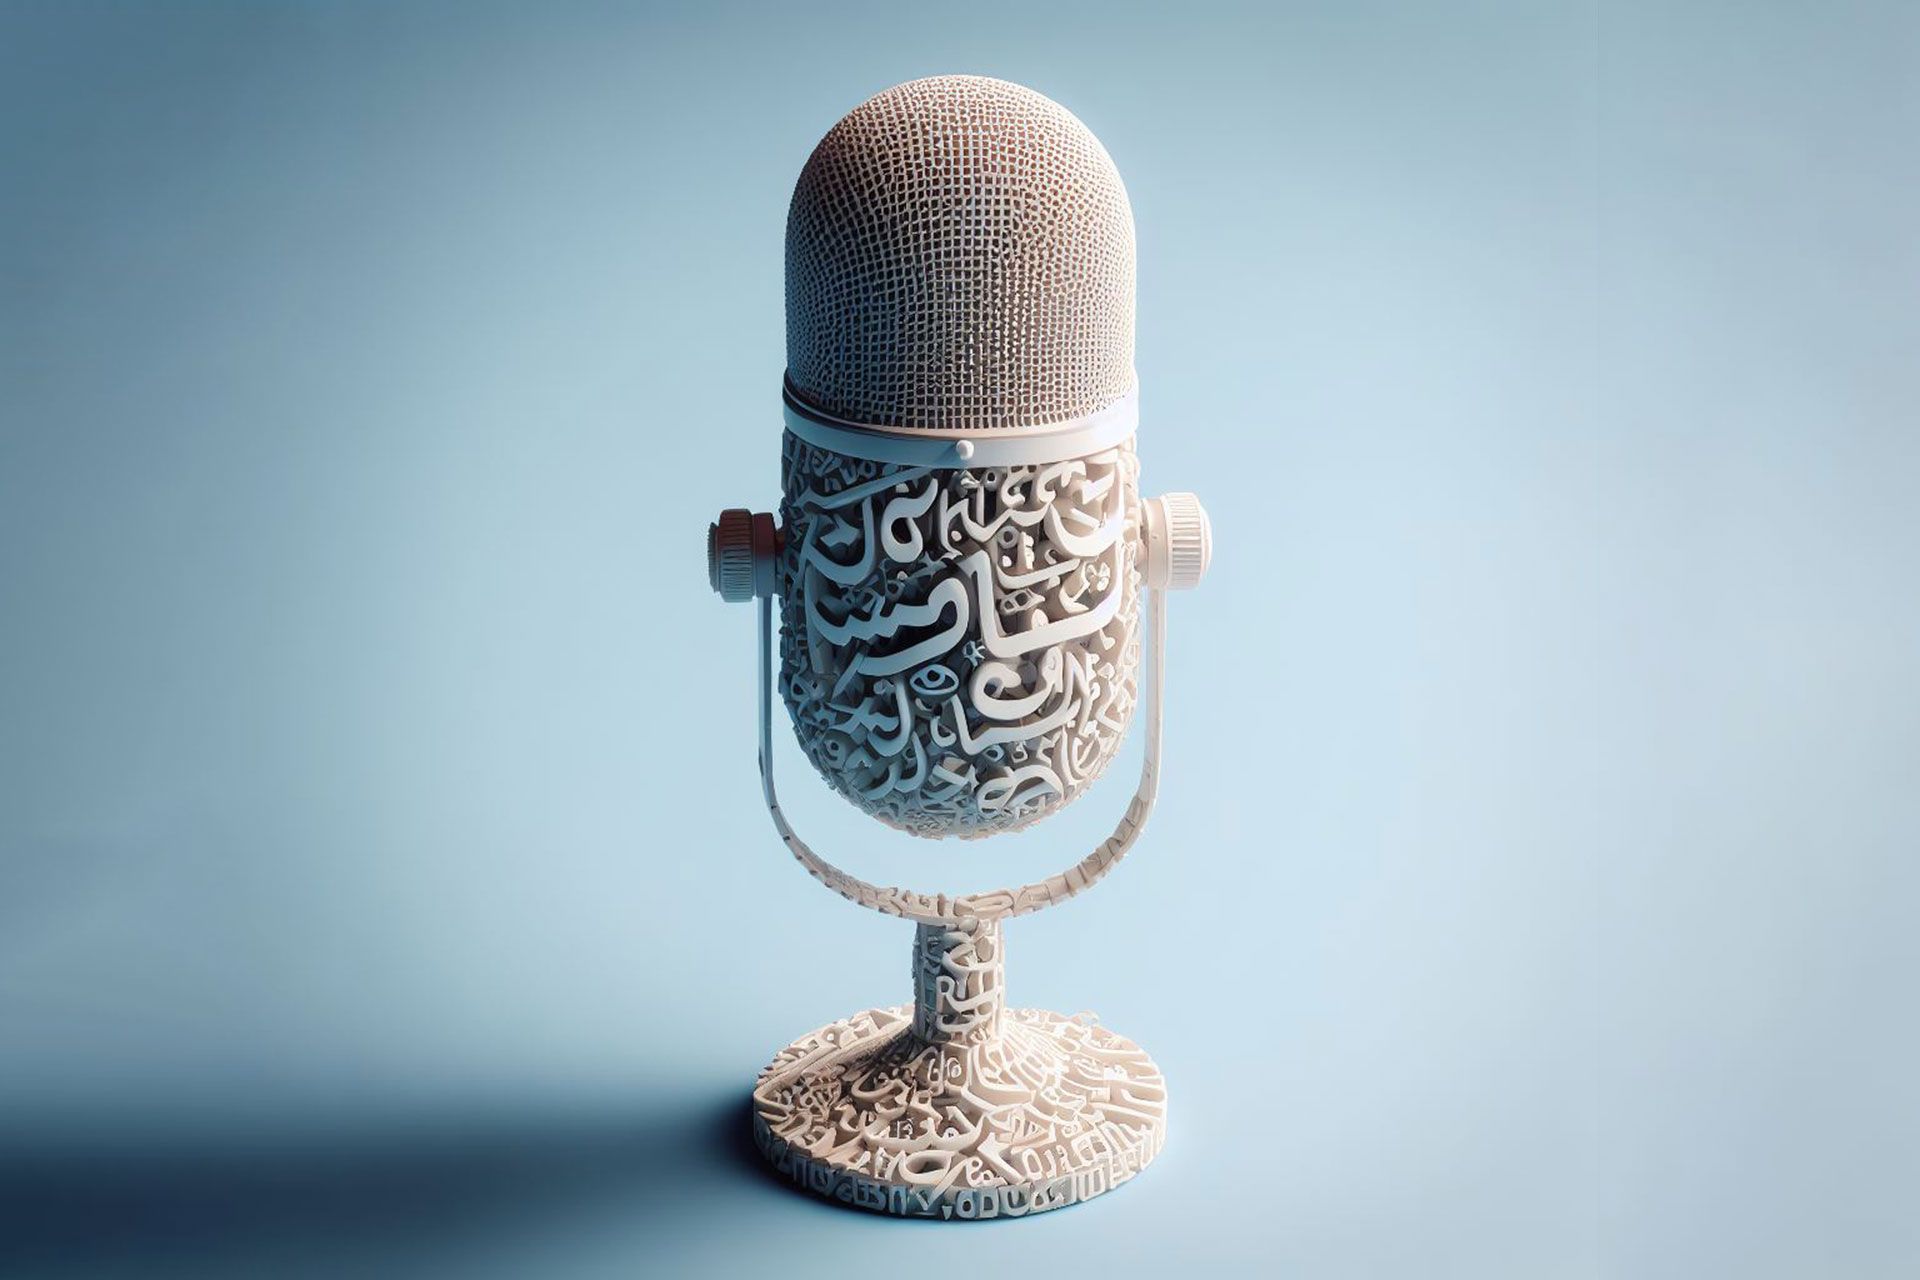 میکرفون پادکست ساخته شده از حروف فارسی